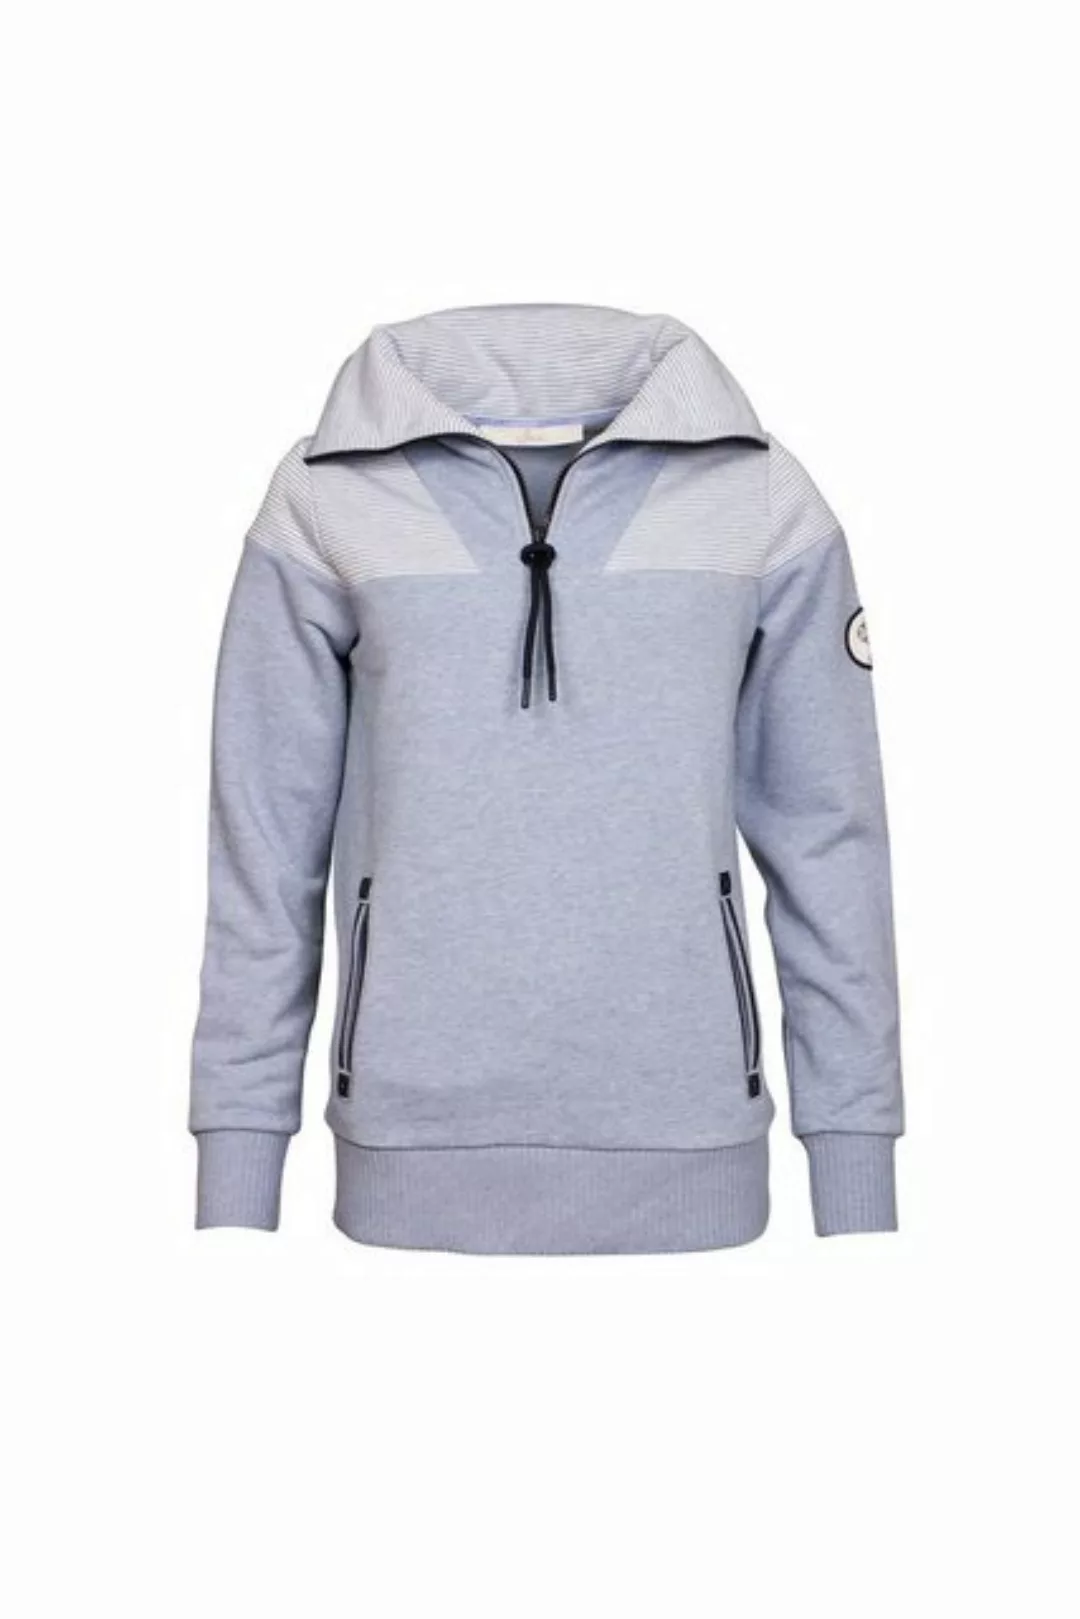 SER Sweatshirt Sweatshirt Troyer Kragen W9923613W auch in großen Größen günstig online kaufen